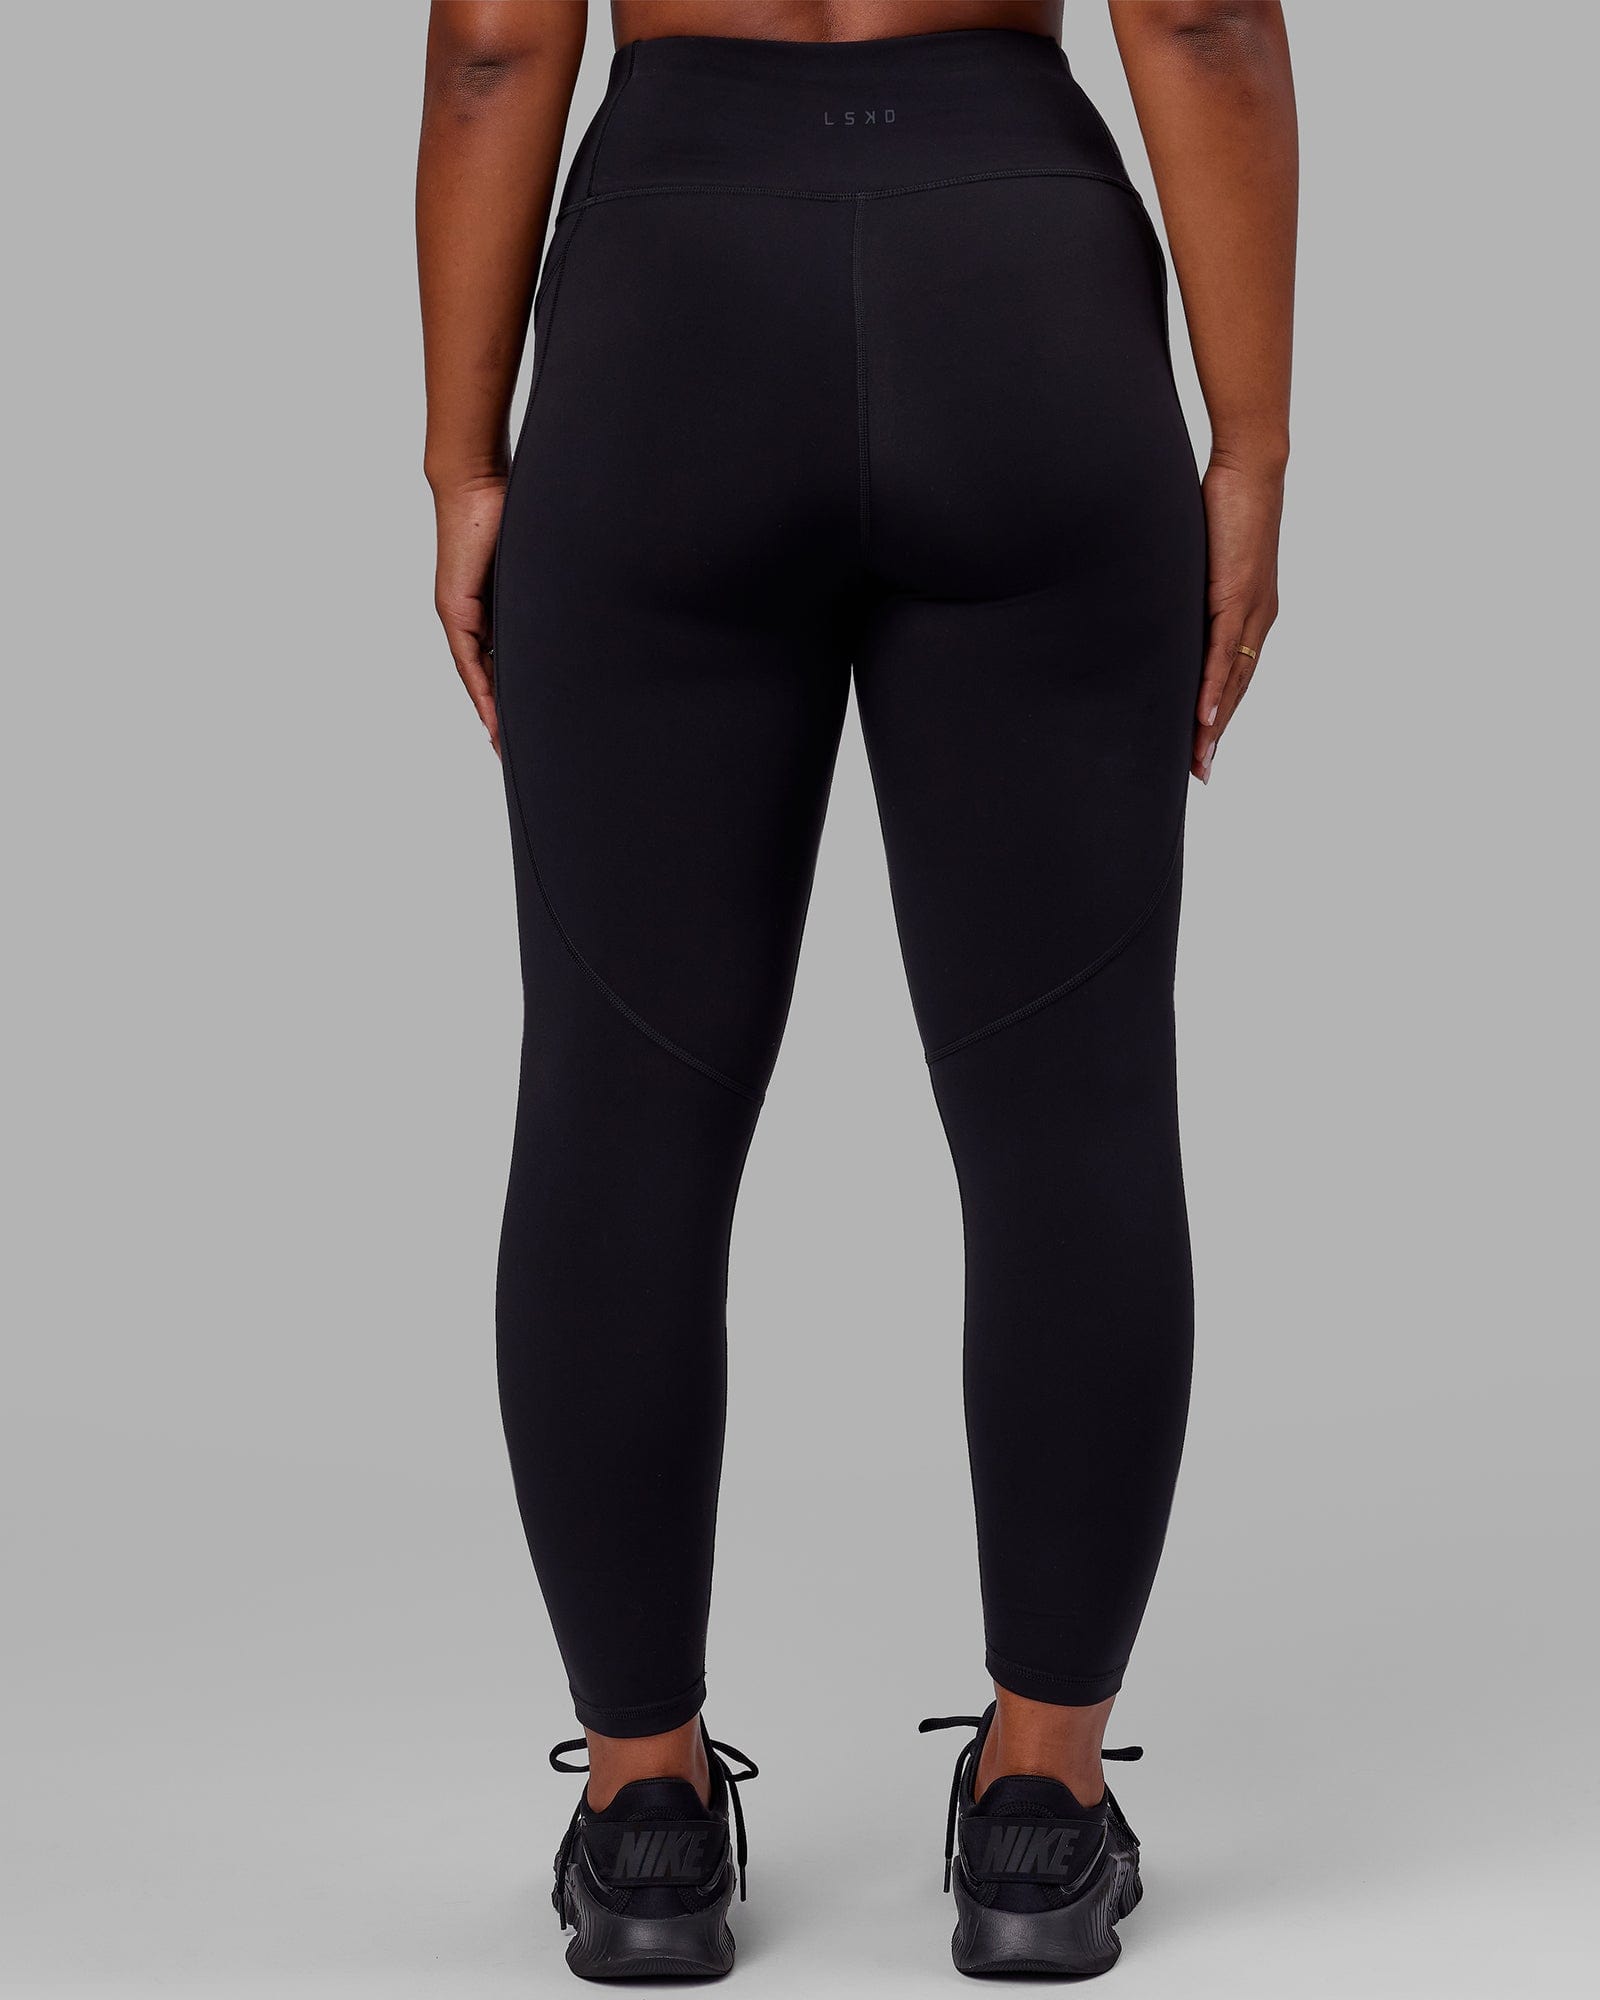 Nike Pro Leggings Size Xs Women Black High waisted Full Length | eBay